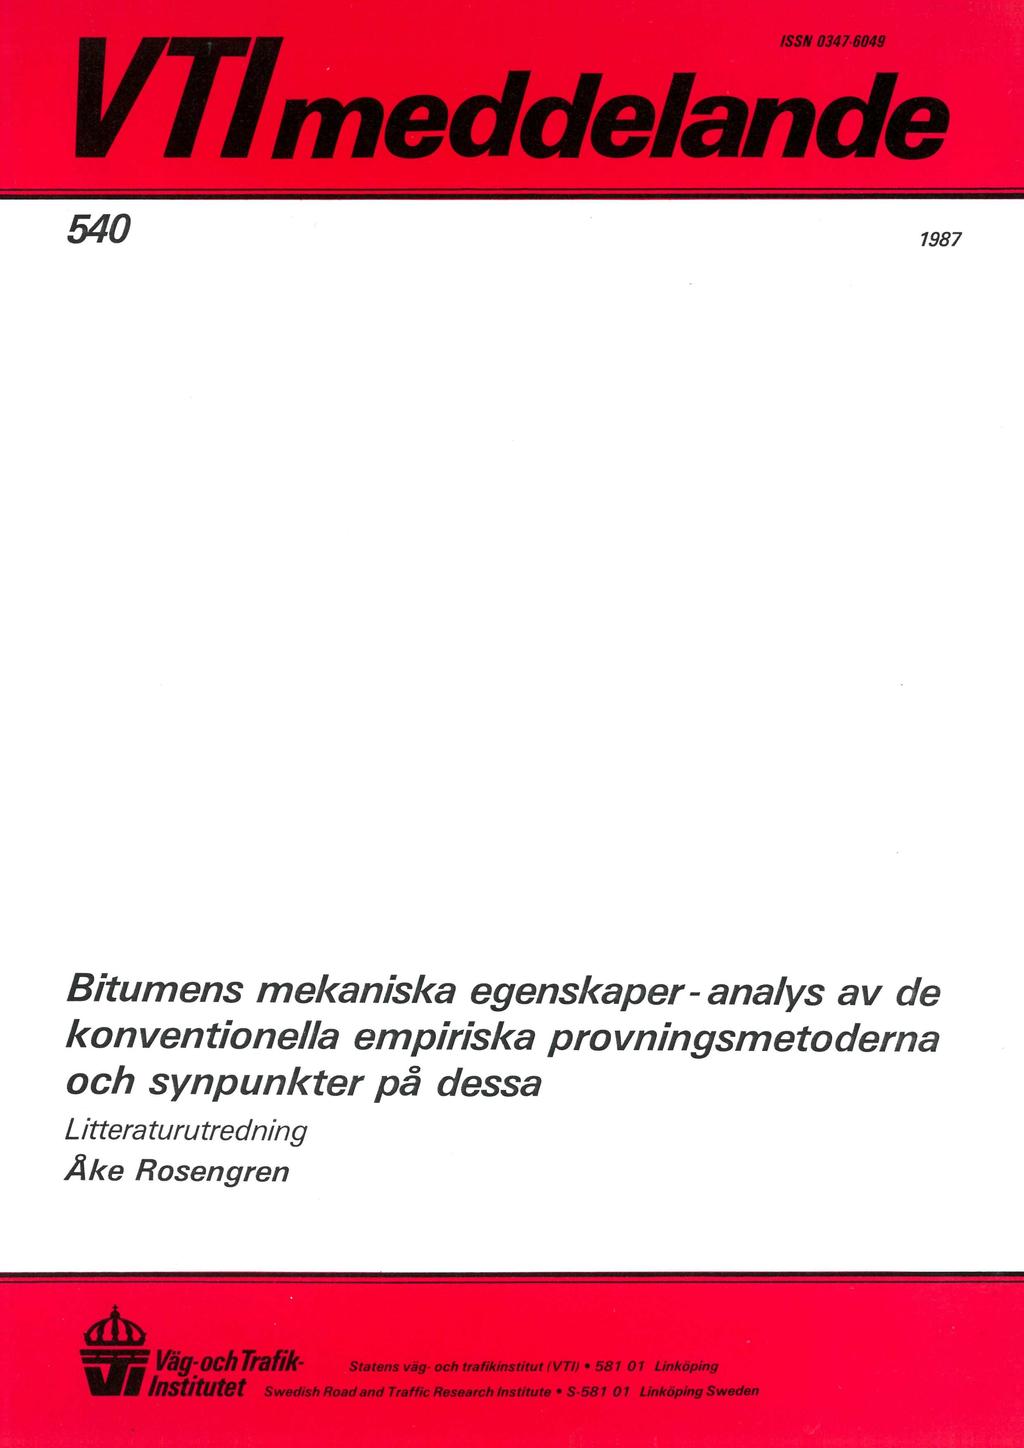 ISSN 0347-6049 $ VP/ meddelande $ 540 ' 1987 Bitumens mekaniska egenskaper- analys av de konventionella empiriska provningsmetoderna och synpunkter på dessa